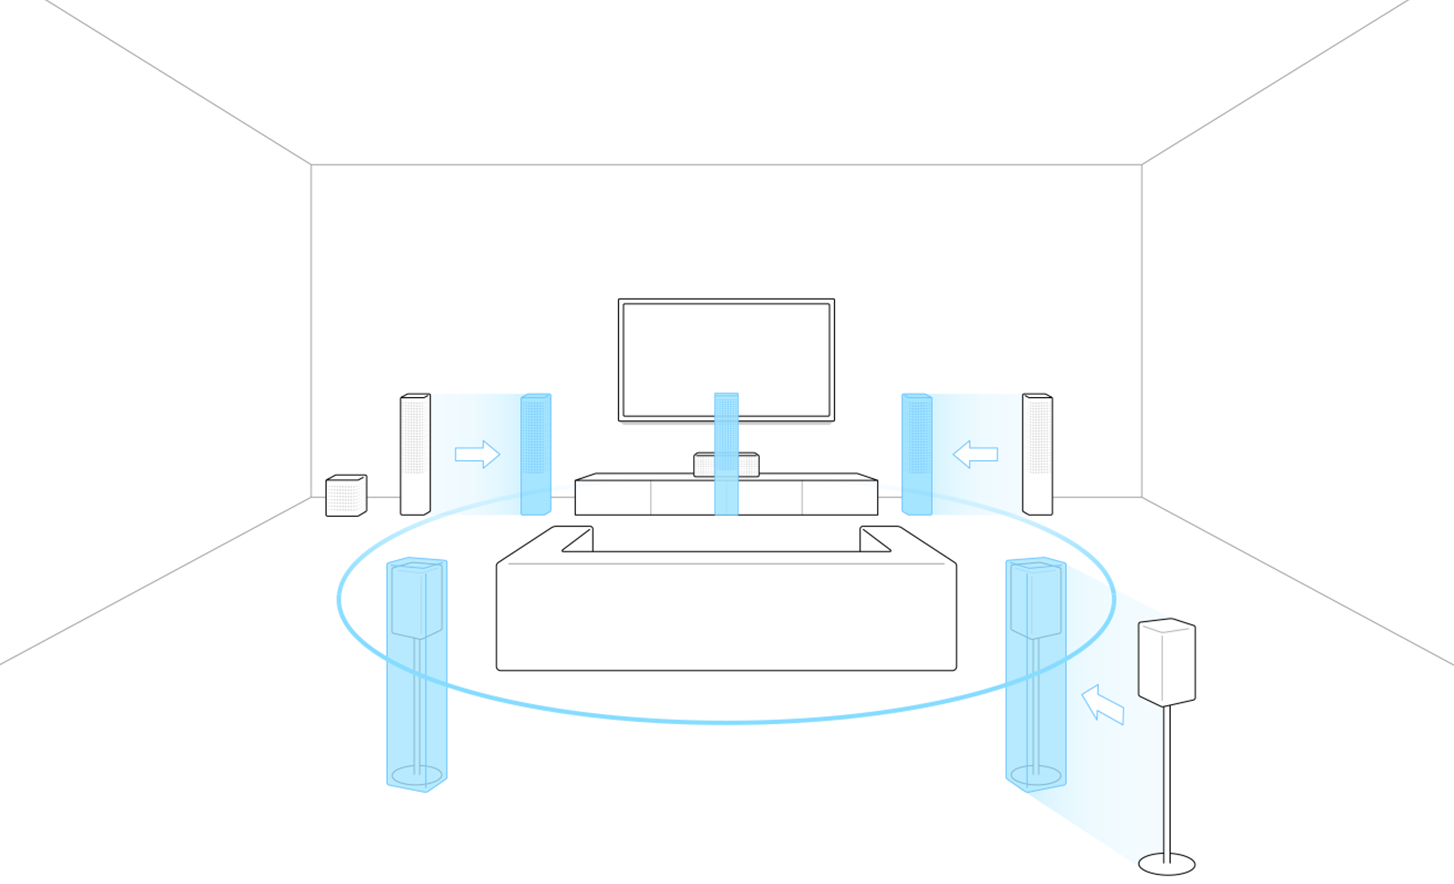 תמונת מתאר של טלוויזיה, ספה ורמקולים. גרסאות בצבע כחול של הרמקולים במיקומים שונים המציינים תנועה